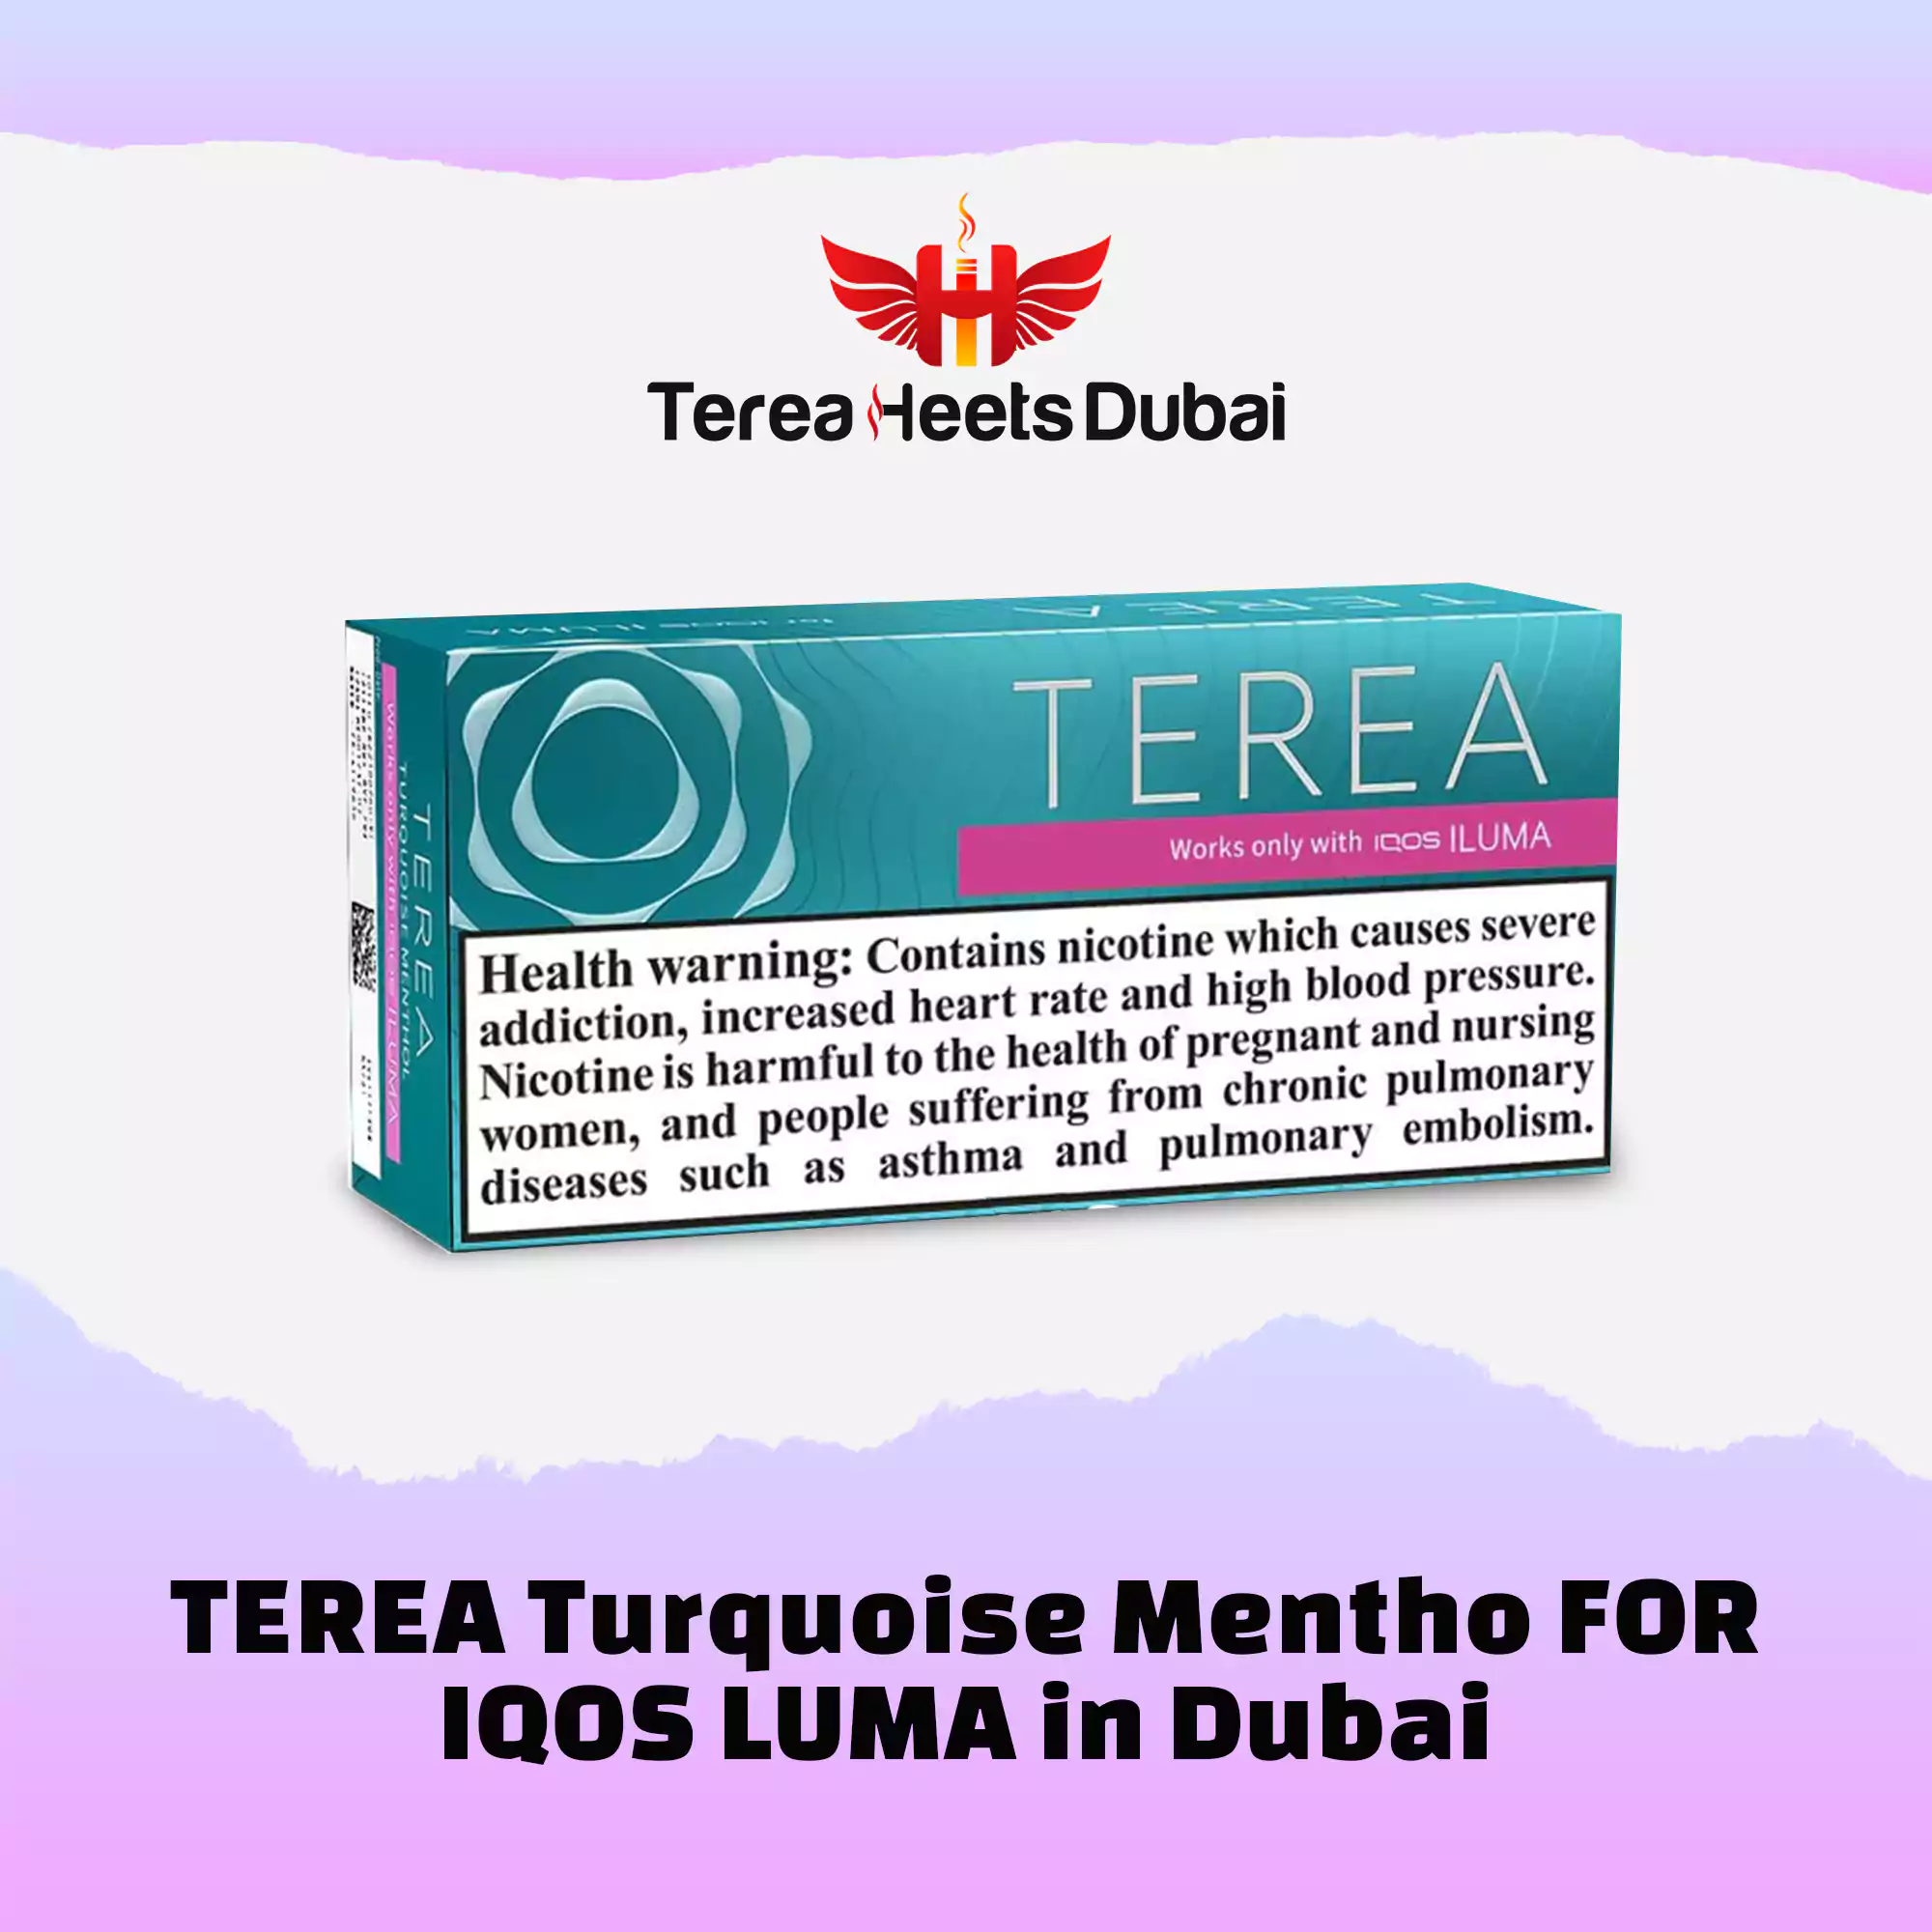 Terea Turquoise Menthol for IQOS Iluma in Dubai